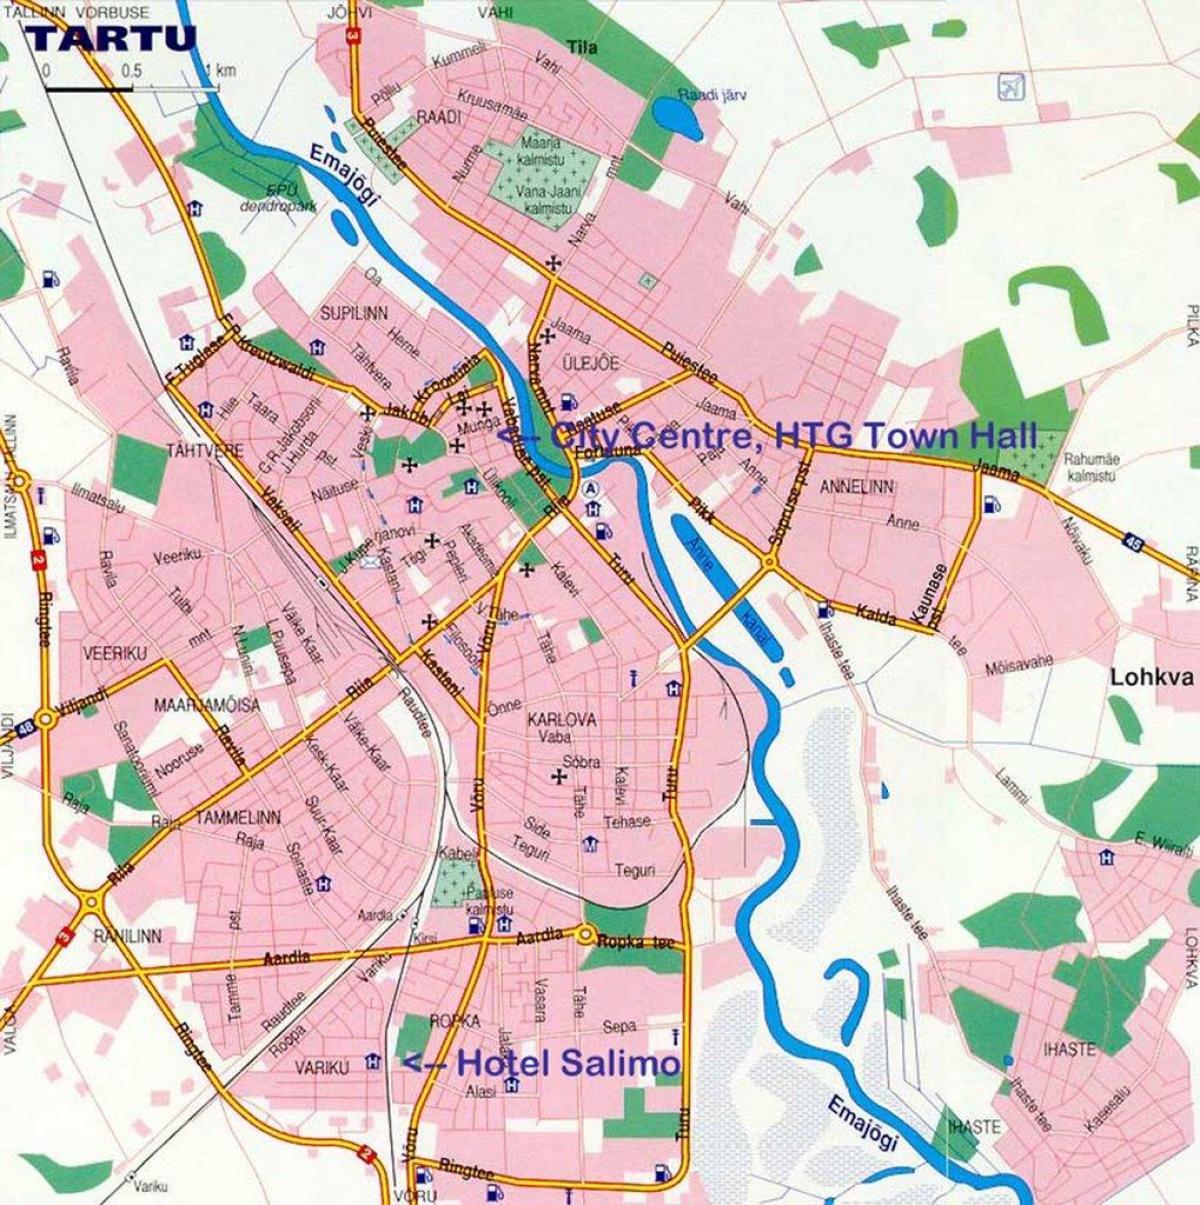 mapa de tartu Estonia